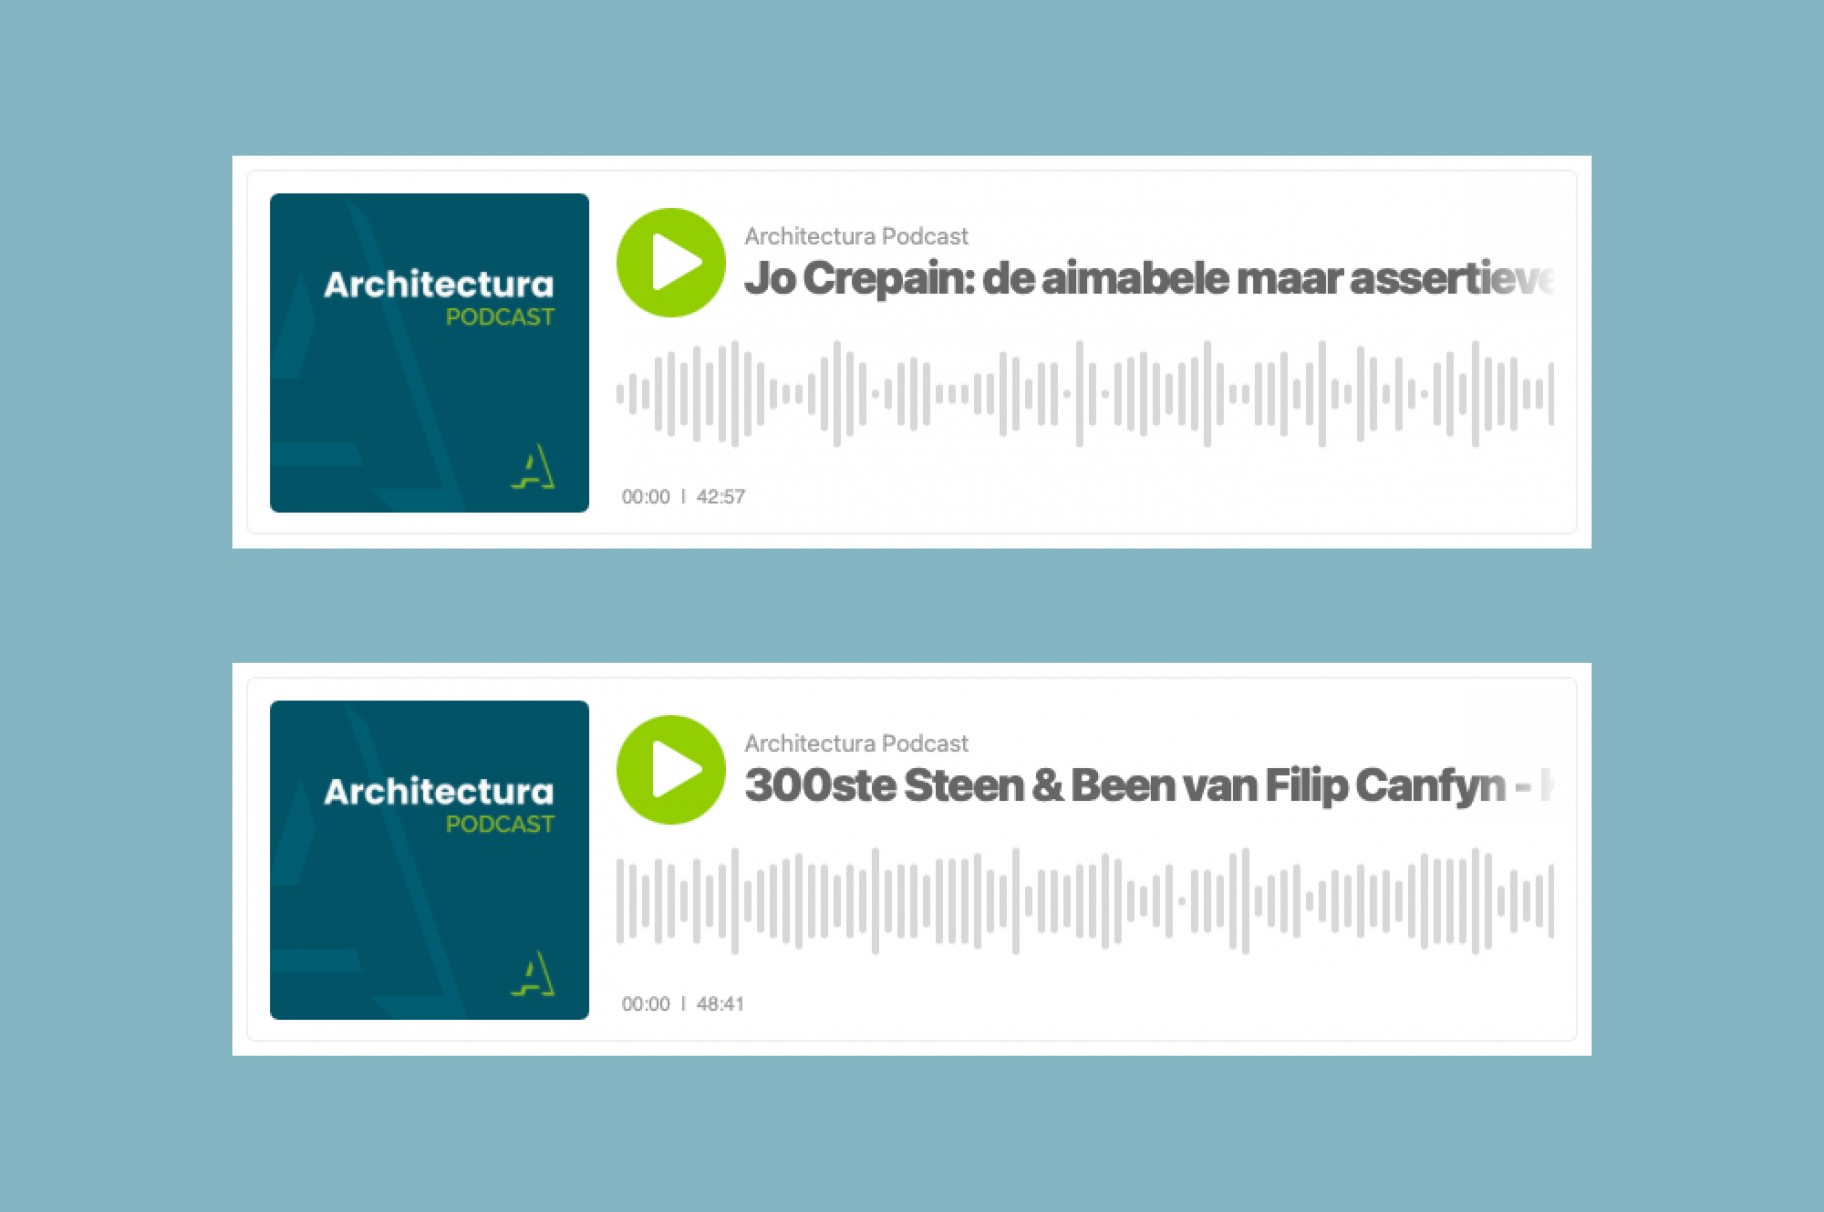 Niklaas Deboutte te gast in twee podcasts over Jo Crepain en Filip Canfyn